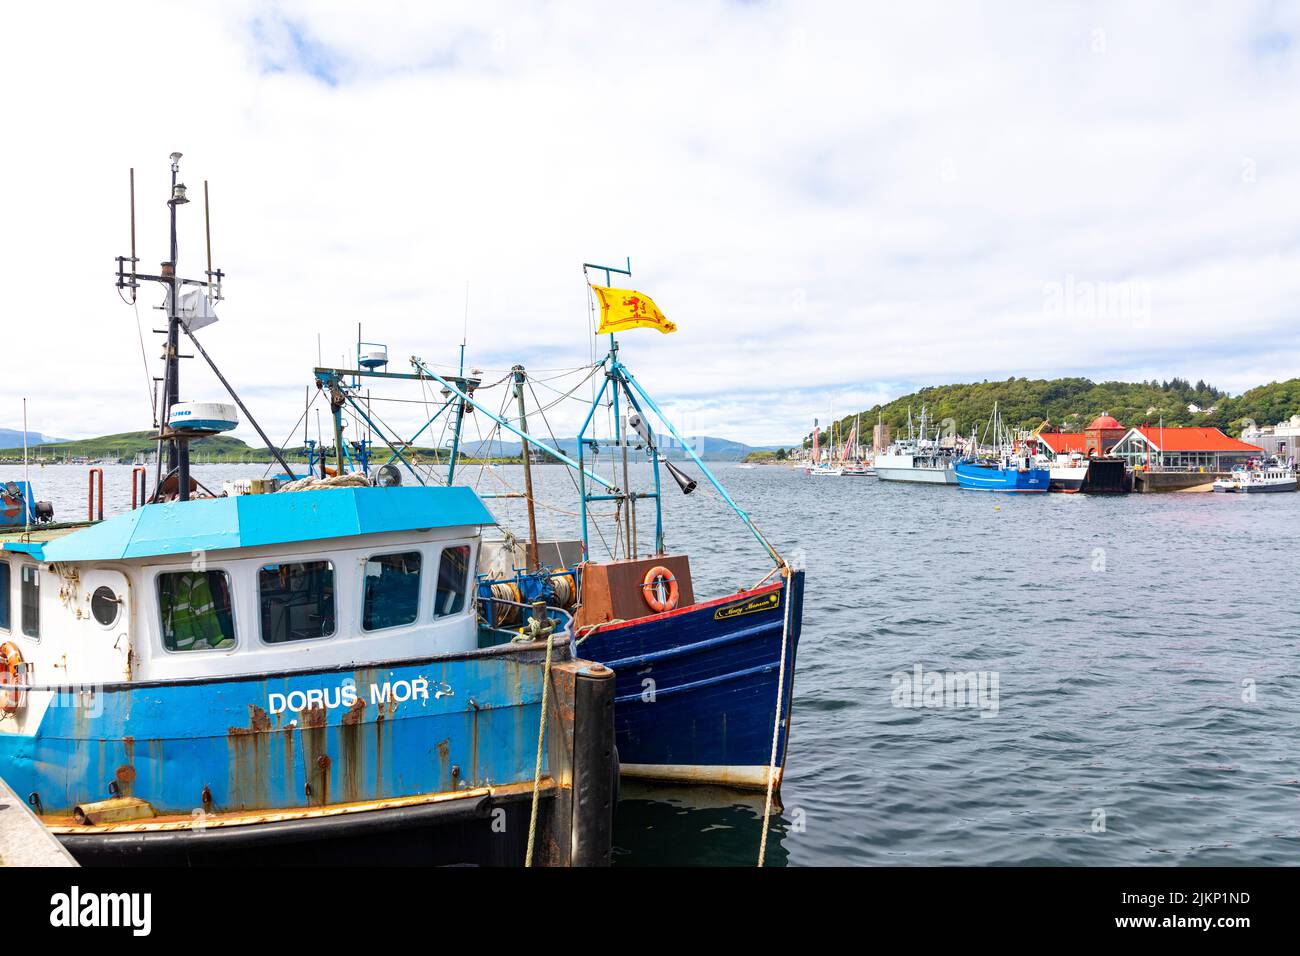 Oban, station balnéaire sur la côte ouest de l'Écosse, port de pêche et bateaux de pêche sur le quai, Oban, Écosse, Royaume-Uni été 2022 Banque D'Images